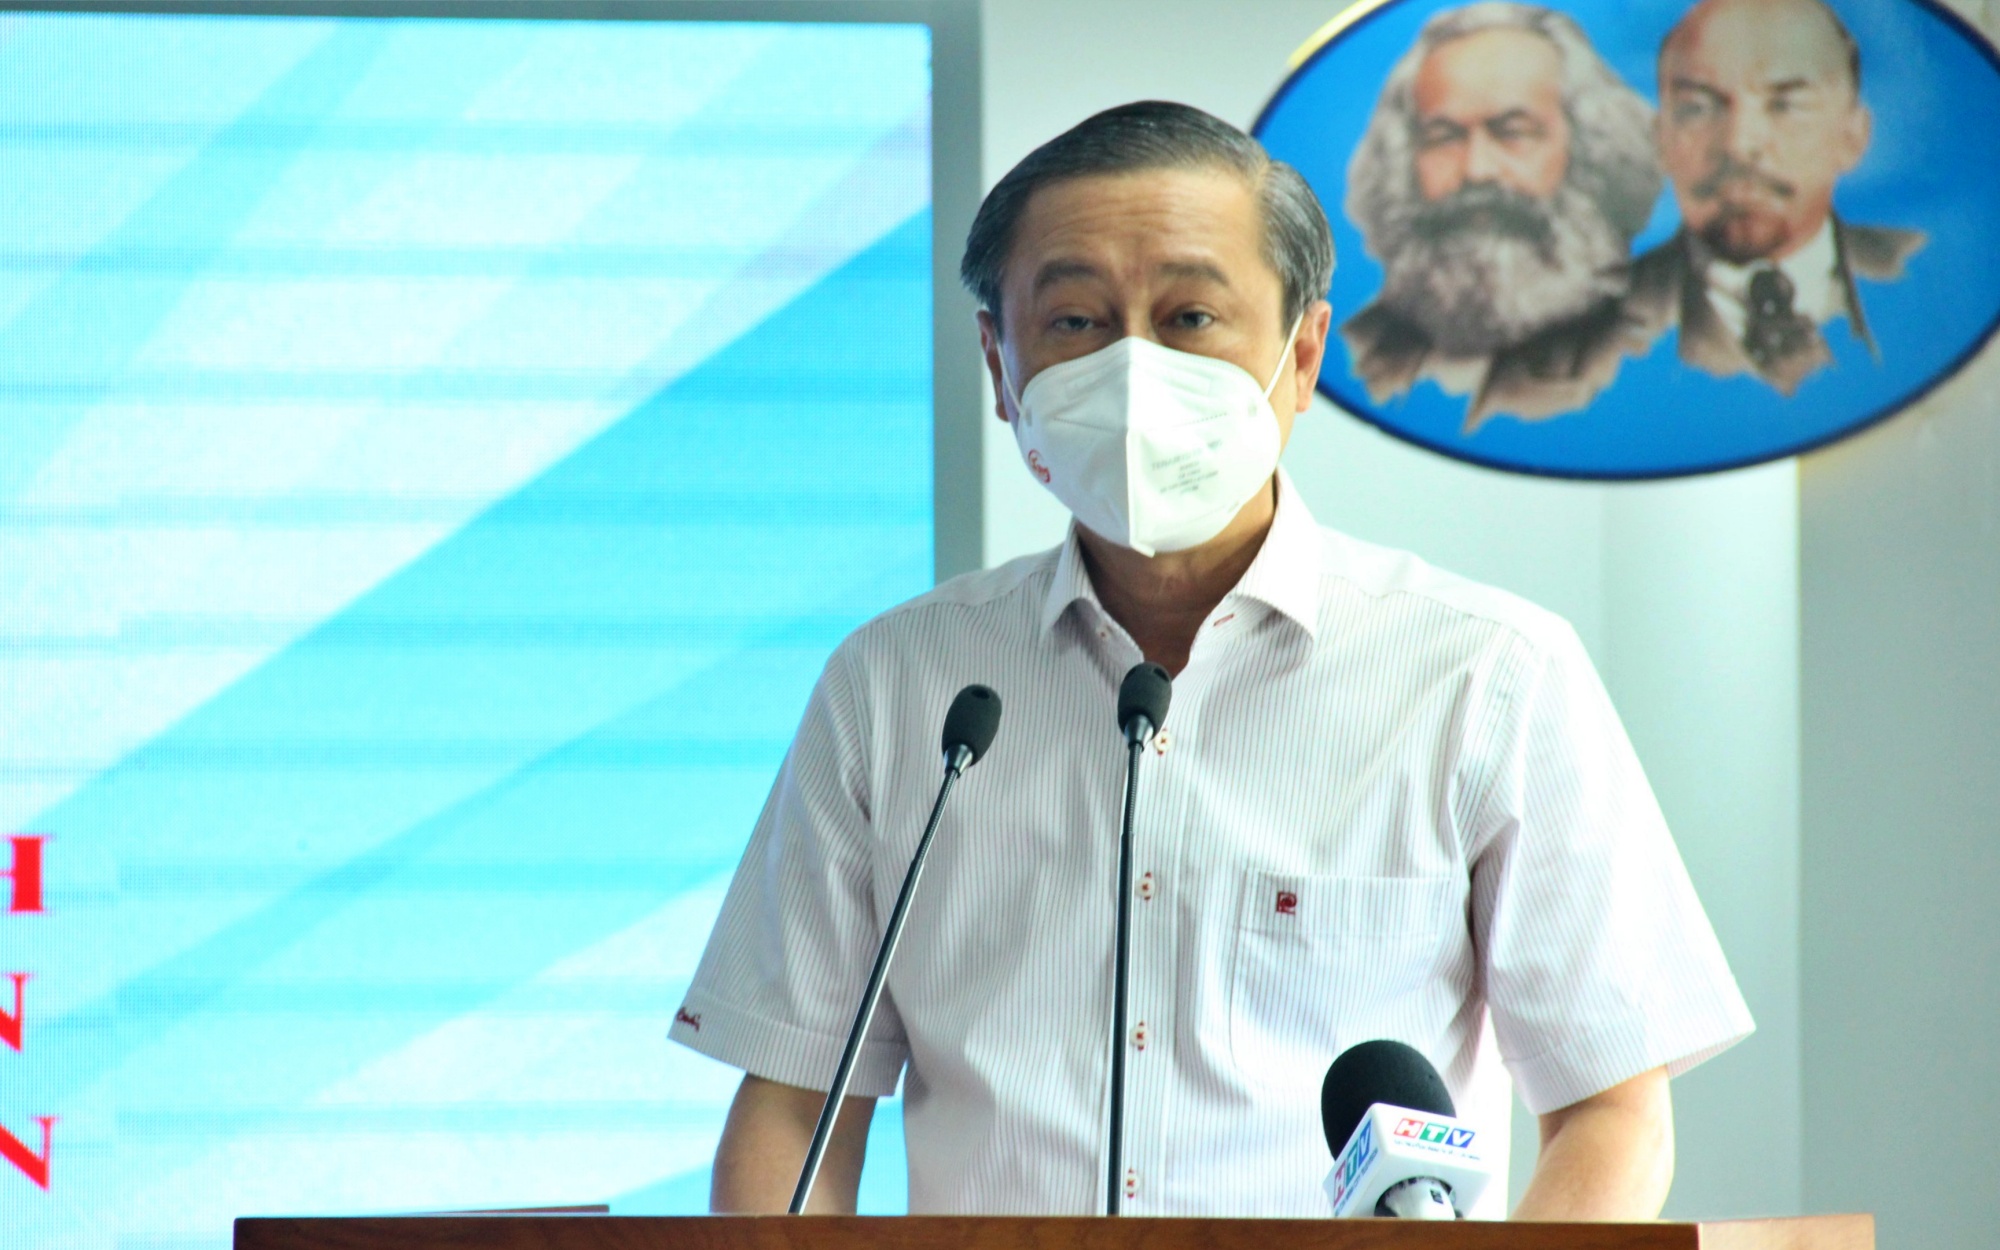 Sự kiện - Tp.HCM công bố chỉ số cải cách hành chính, UBND quận Bình Tân dẫn đầu